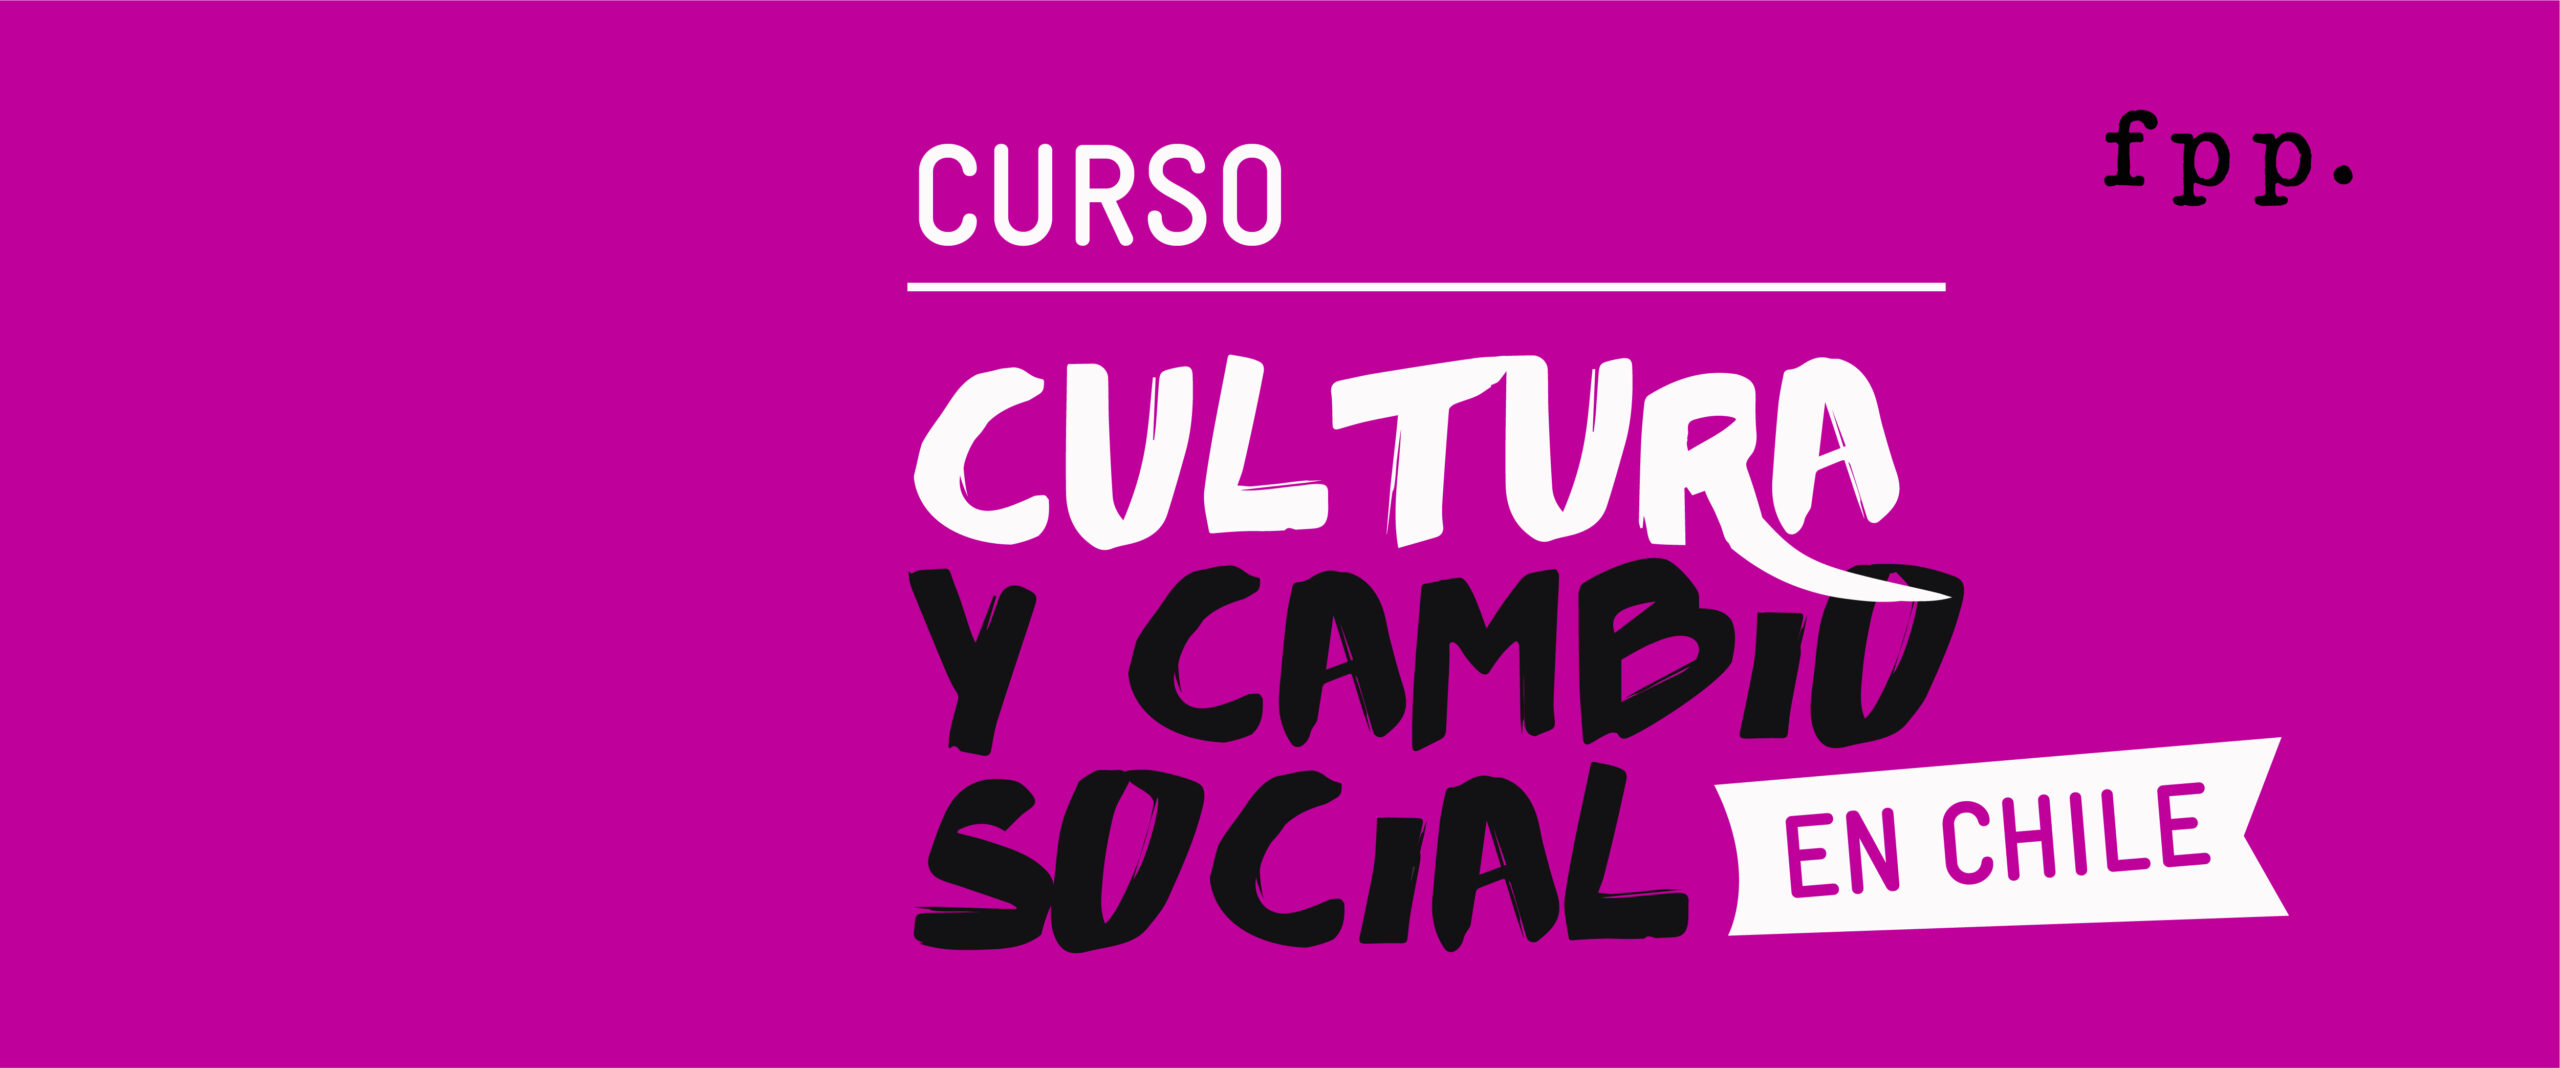 Curso: Cultura y cambio social en Chile